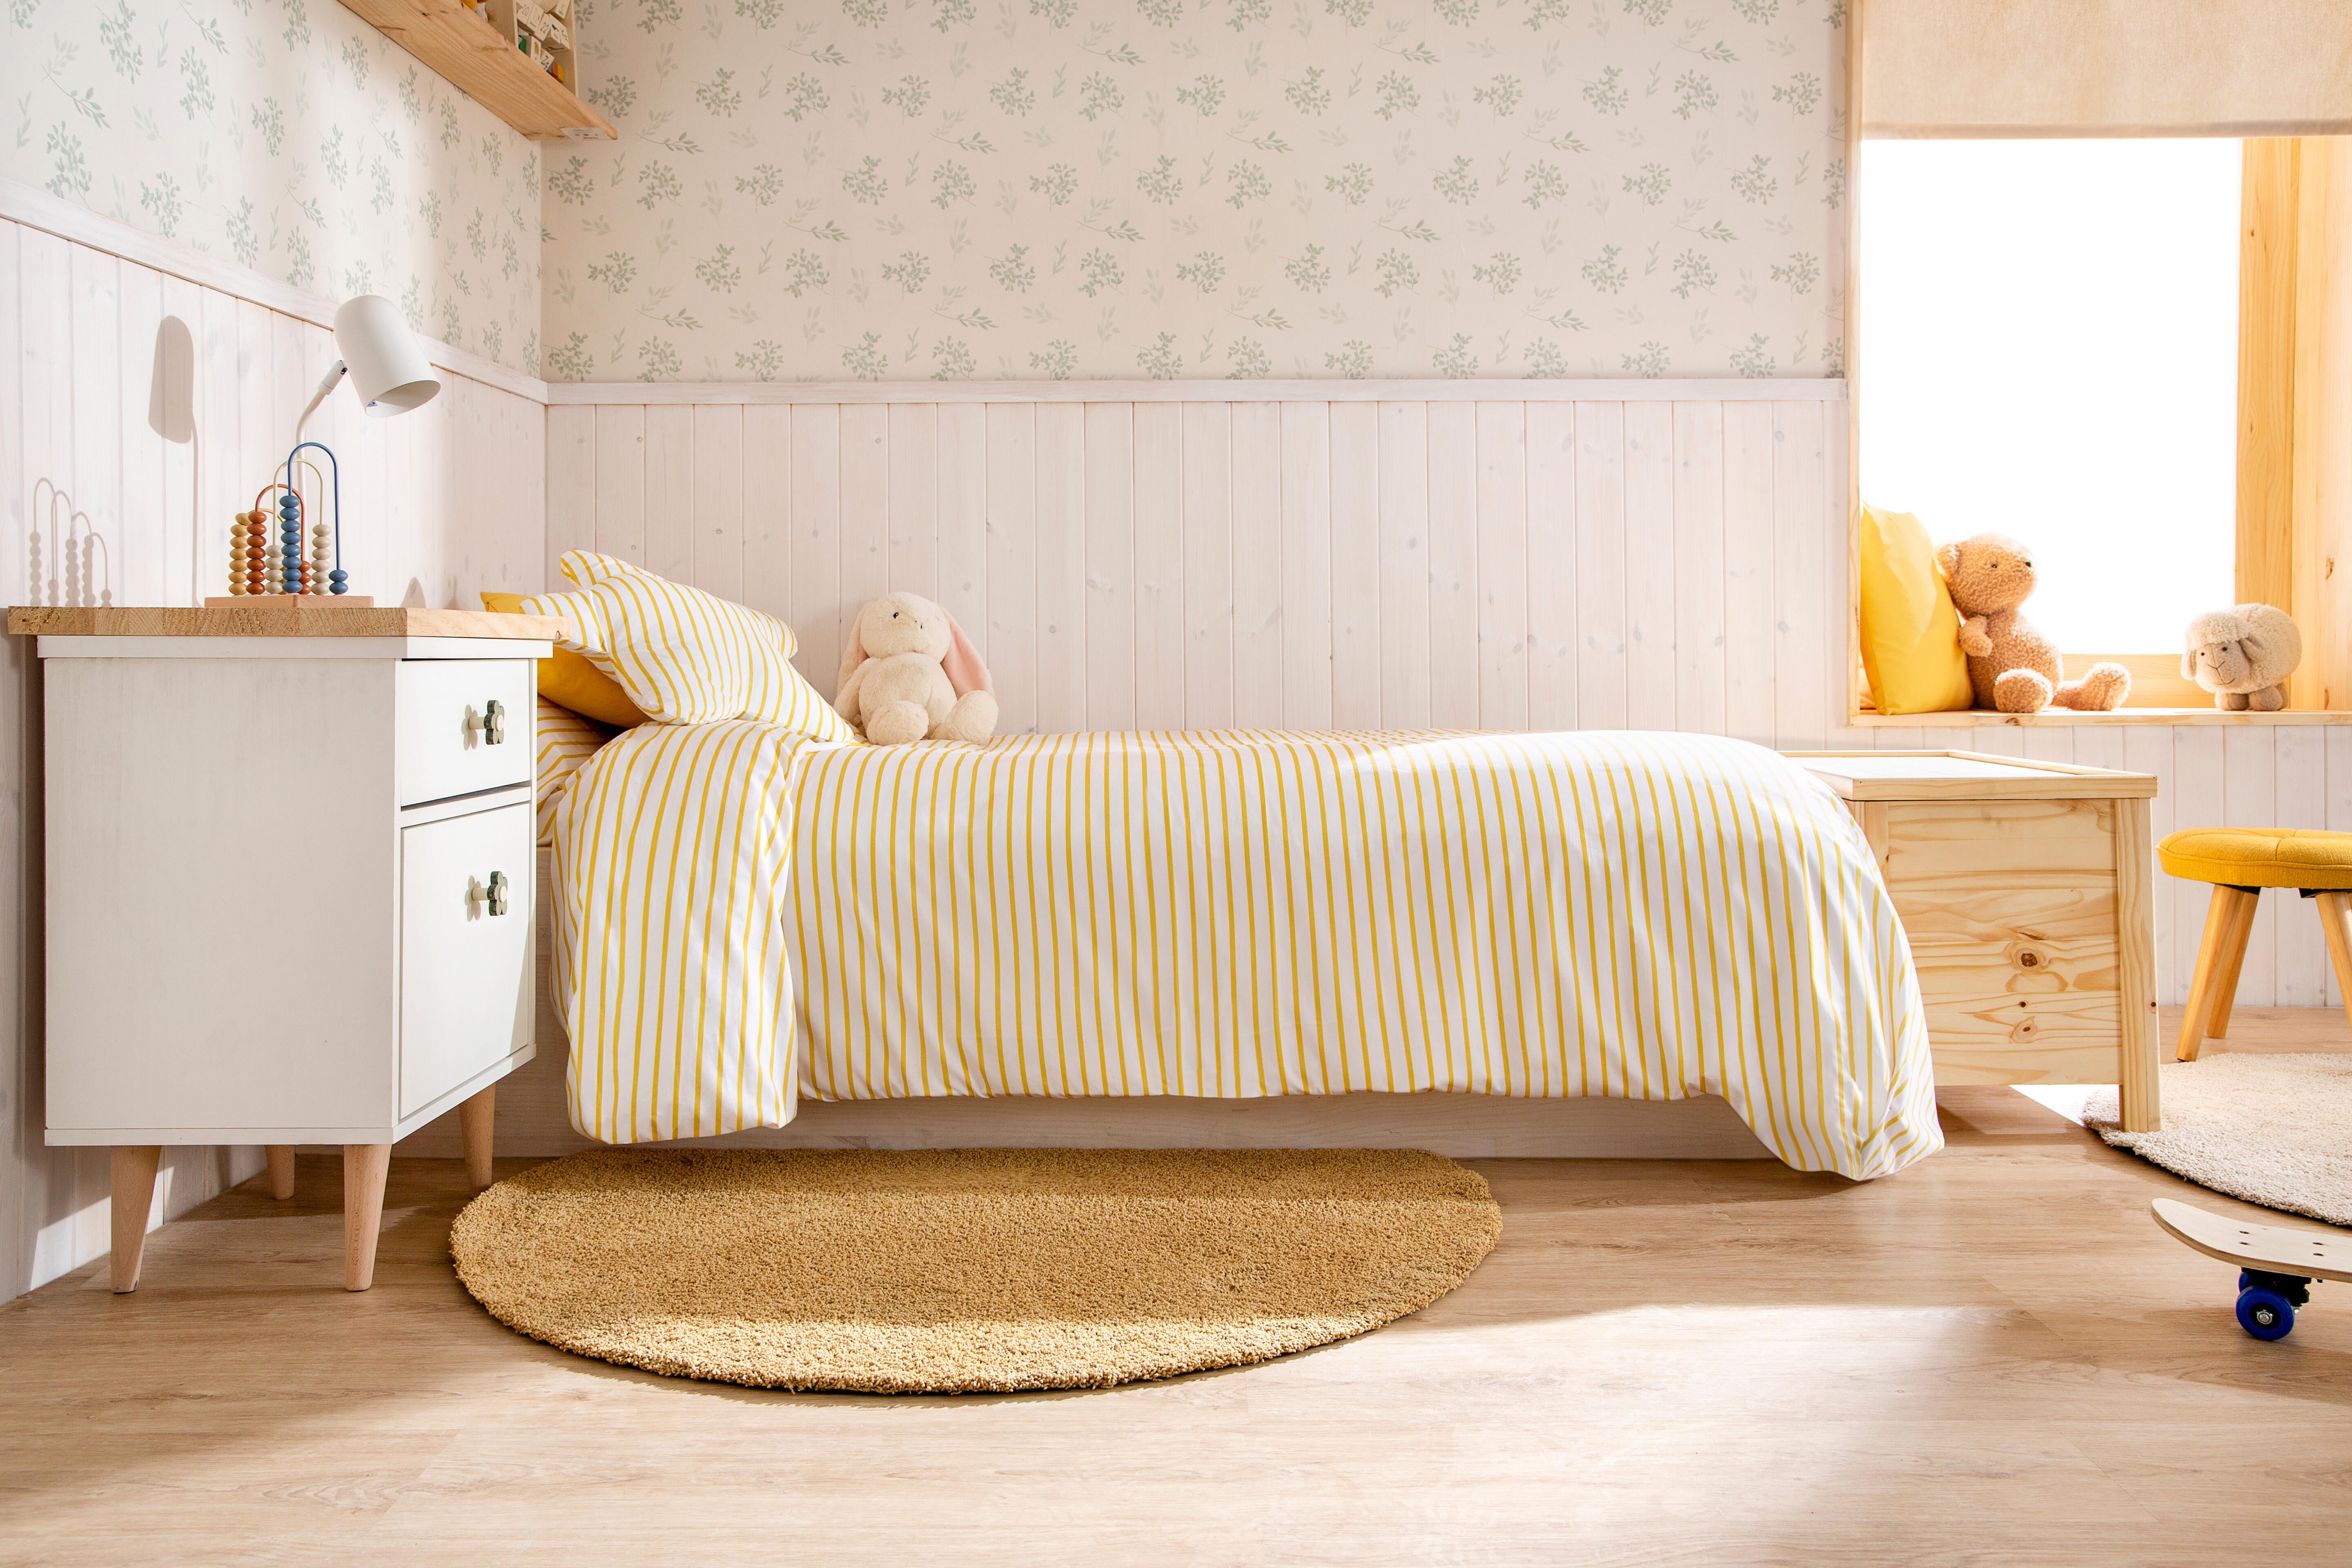 17 cómodas bonitas para poner orden (y estilo) en tu dormitorio